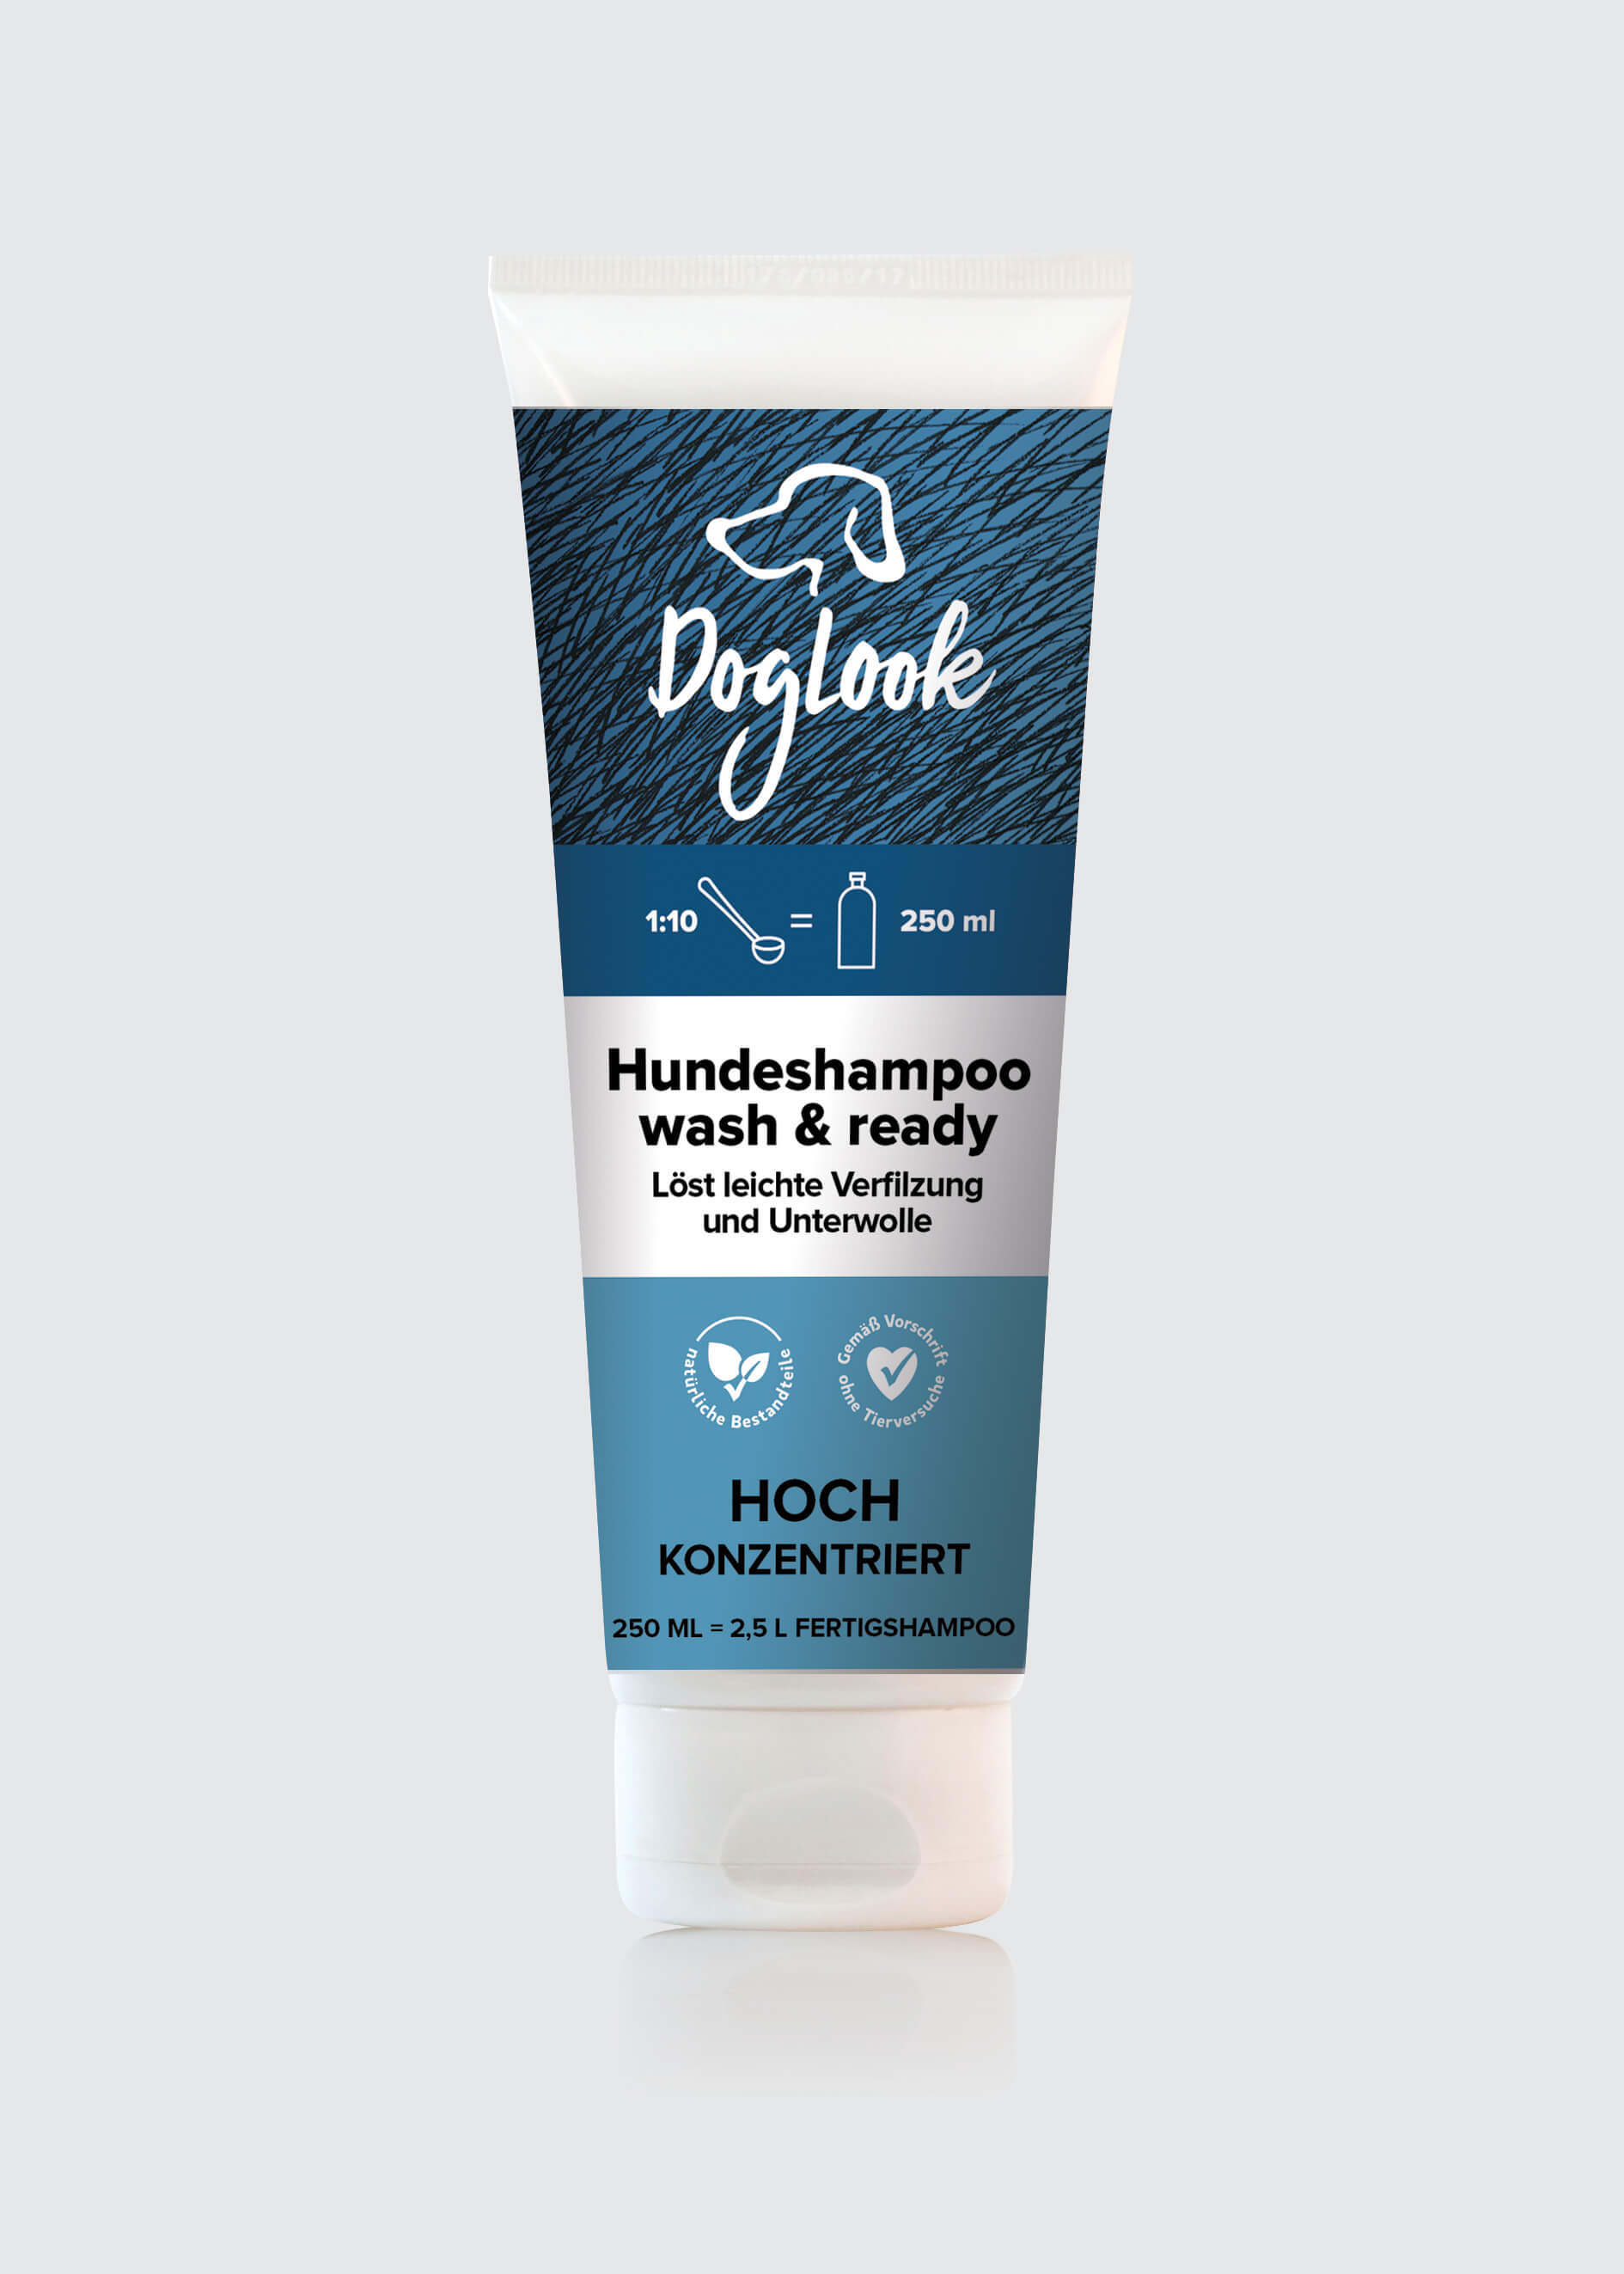 DOGLOOK Wash & Ready Dog Shampoo